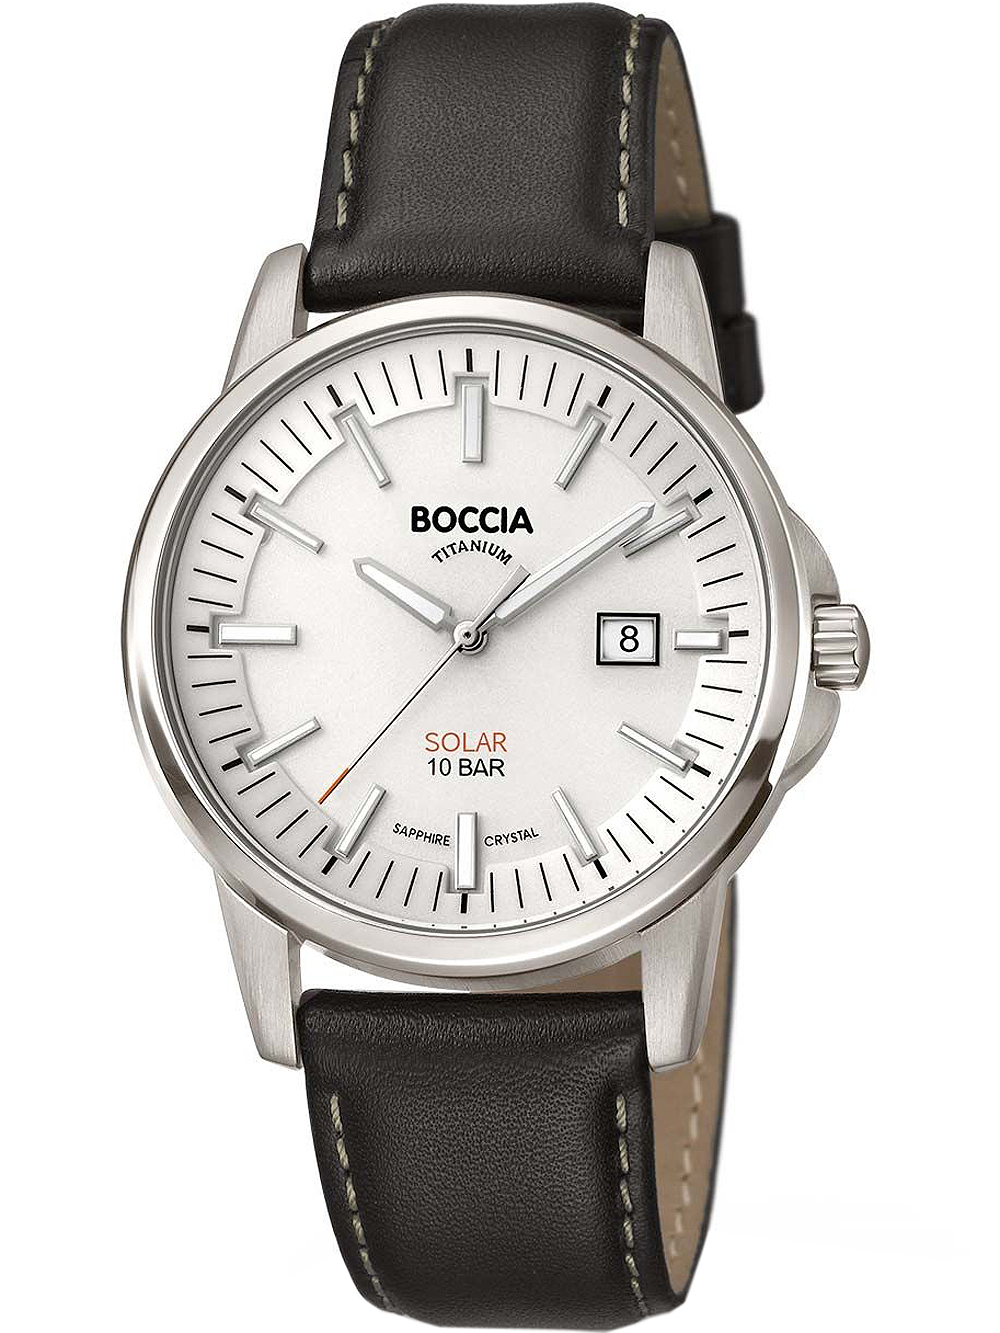 Pánské hodinky Boccia 3643-01 Solar